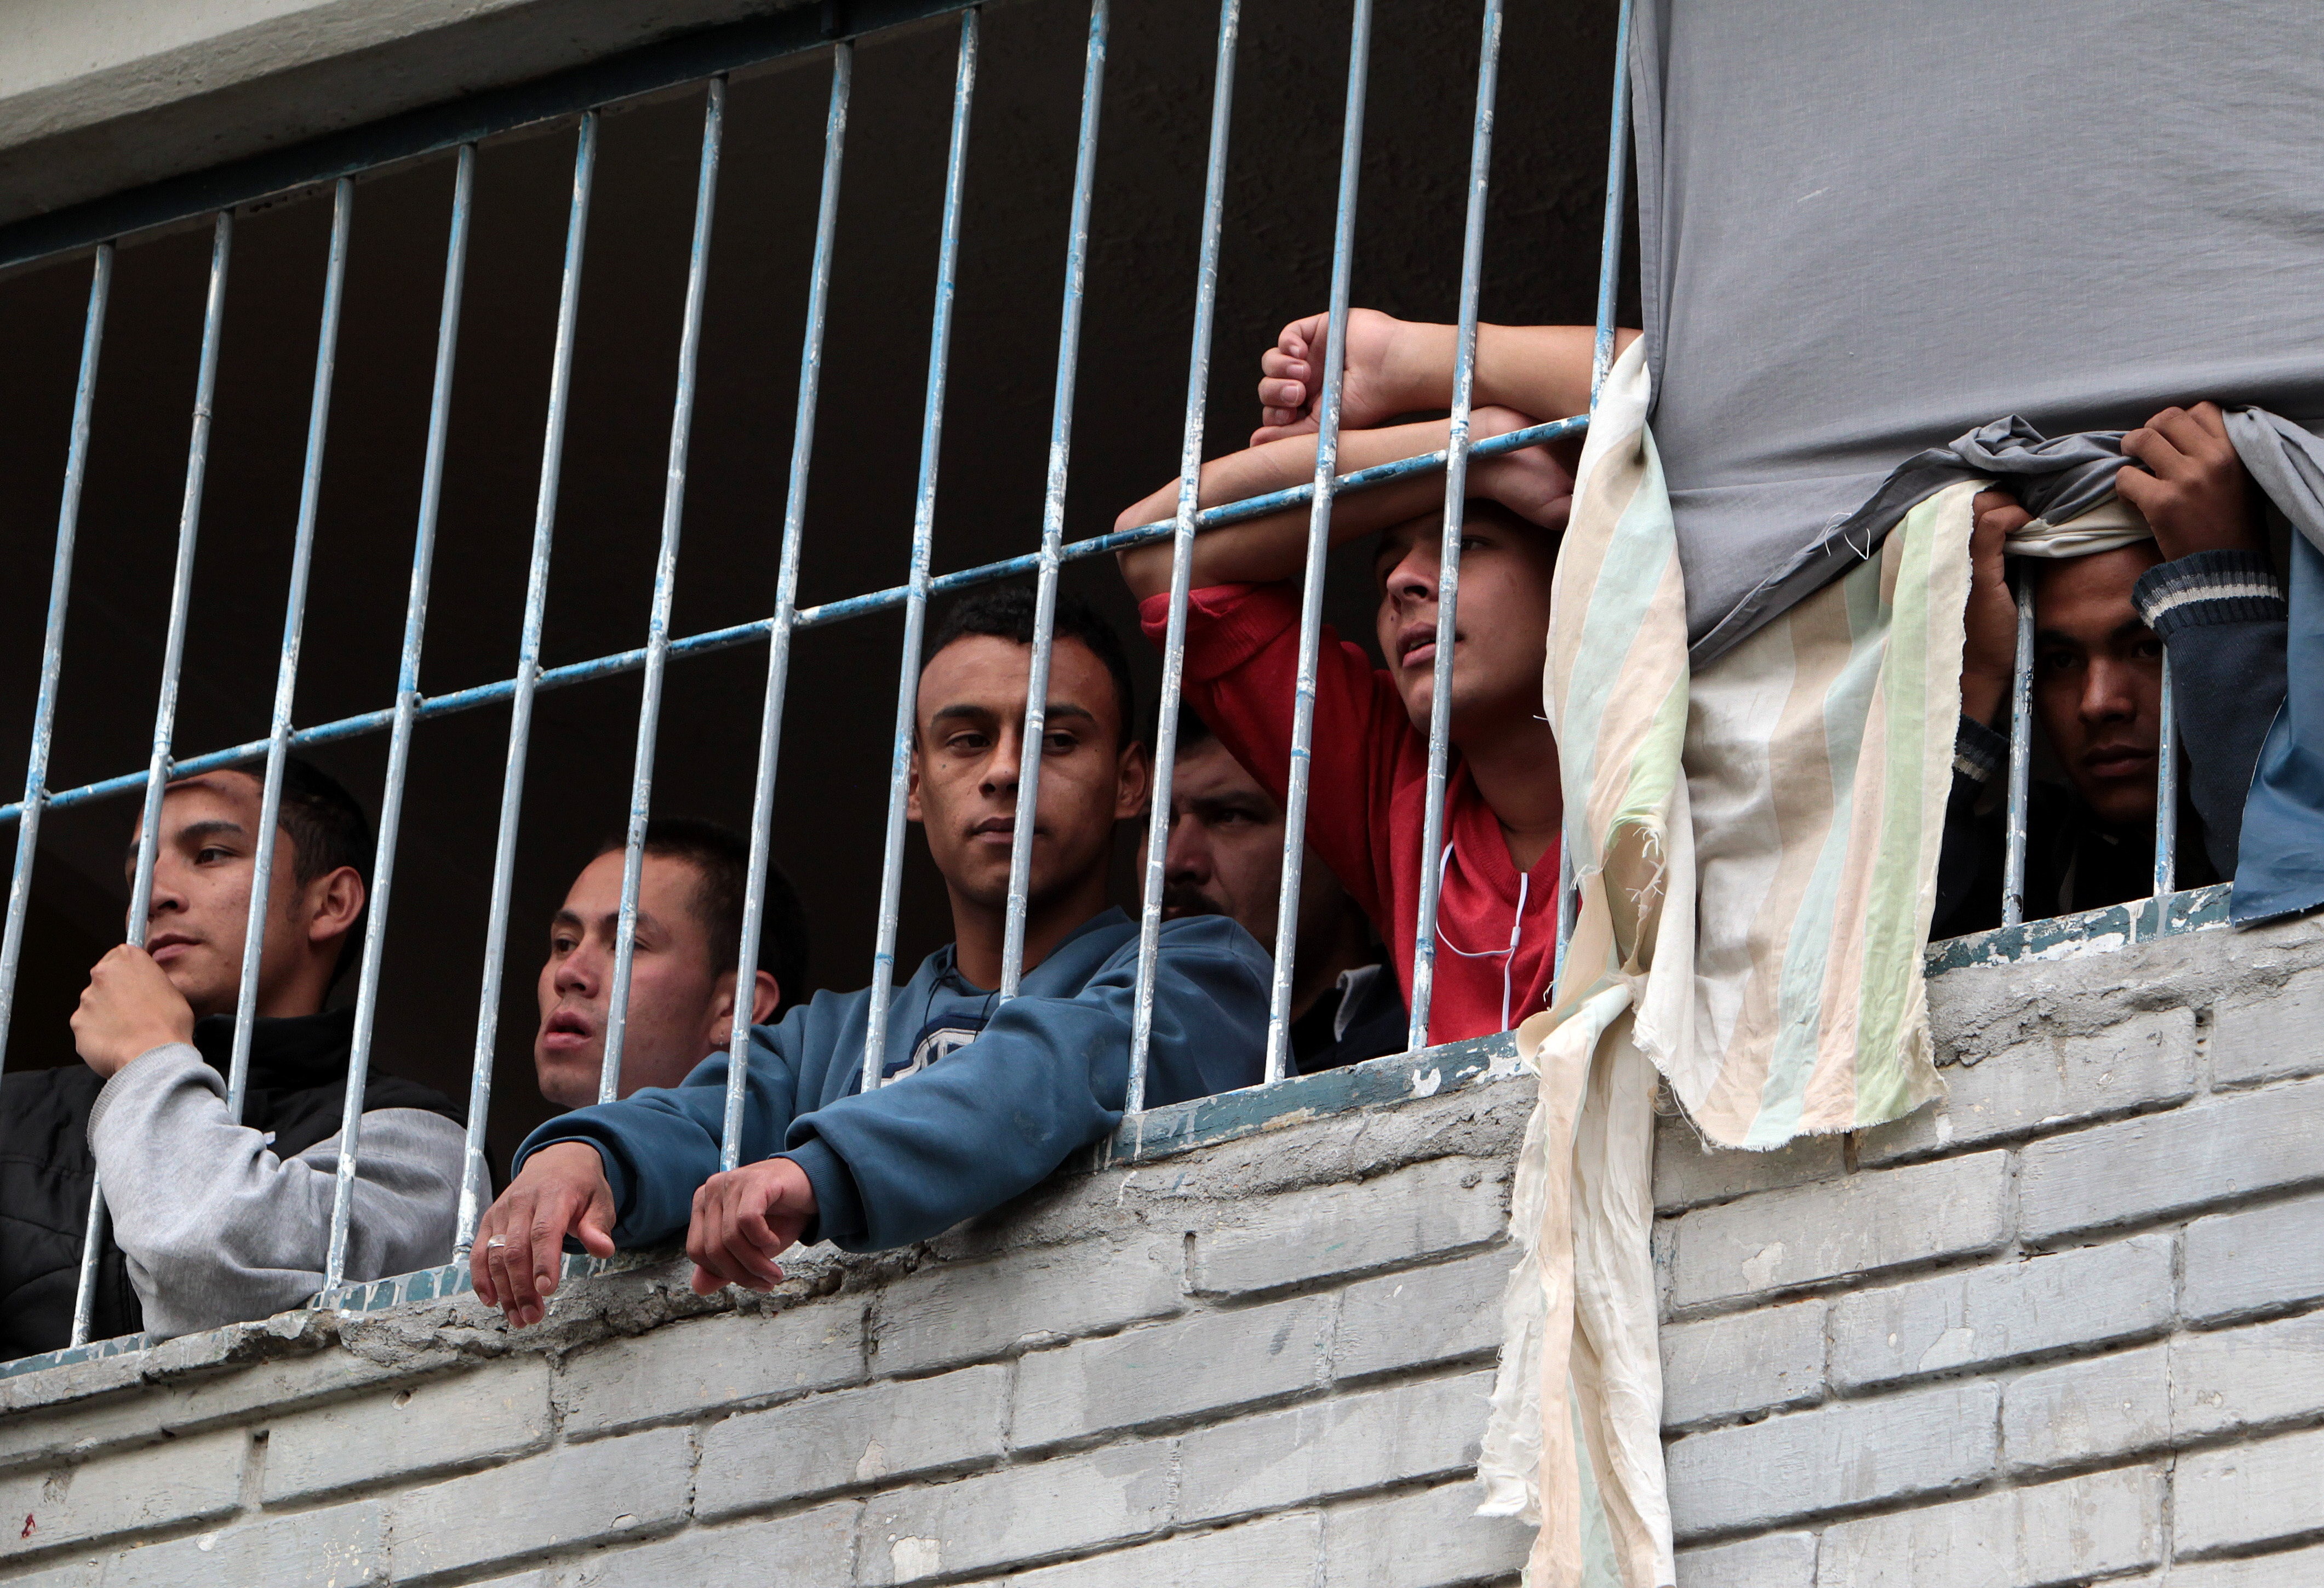 370 % de hacinamiento tiene la estación de Policía de La Macarena en Bogotá, donde se escaparon 26 detenidos